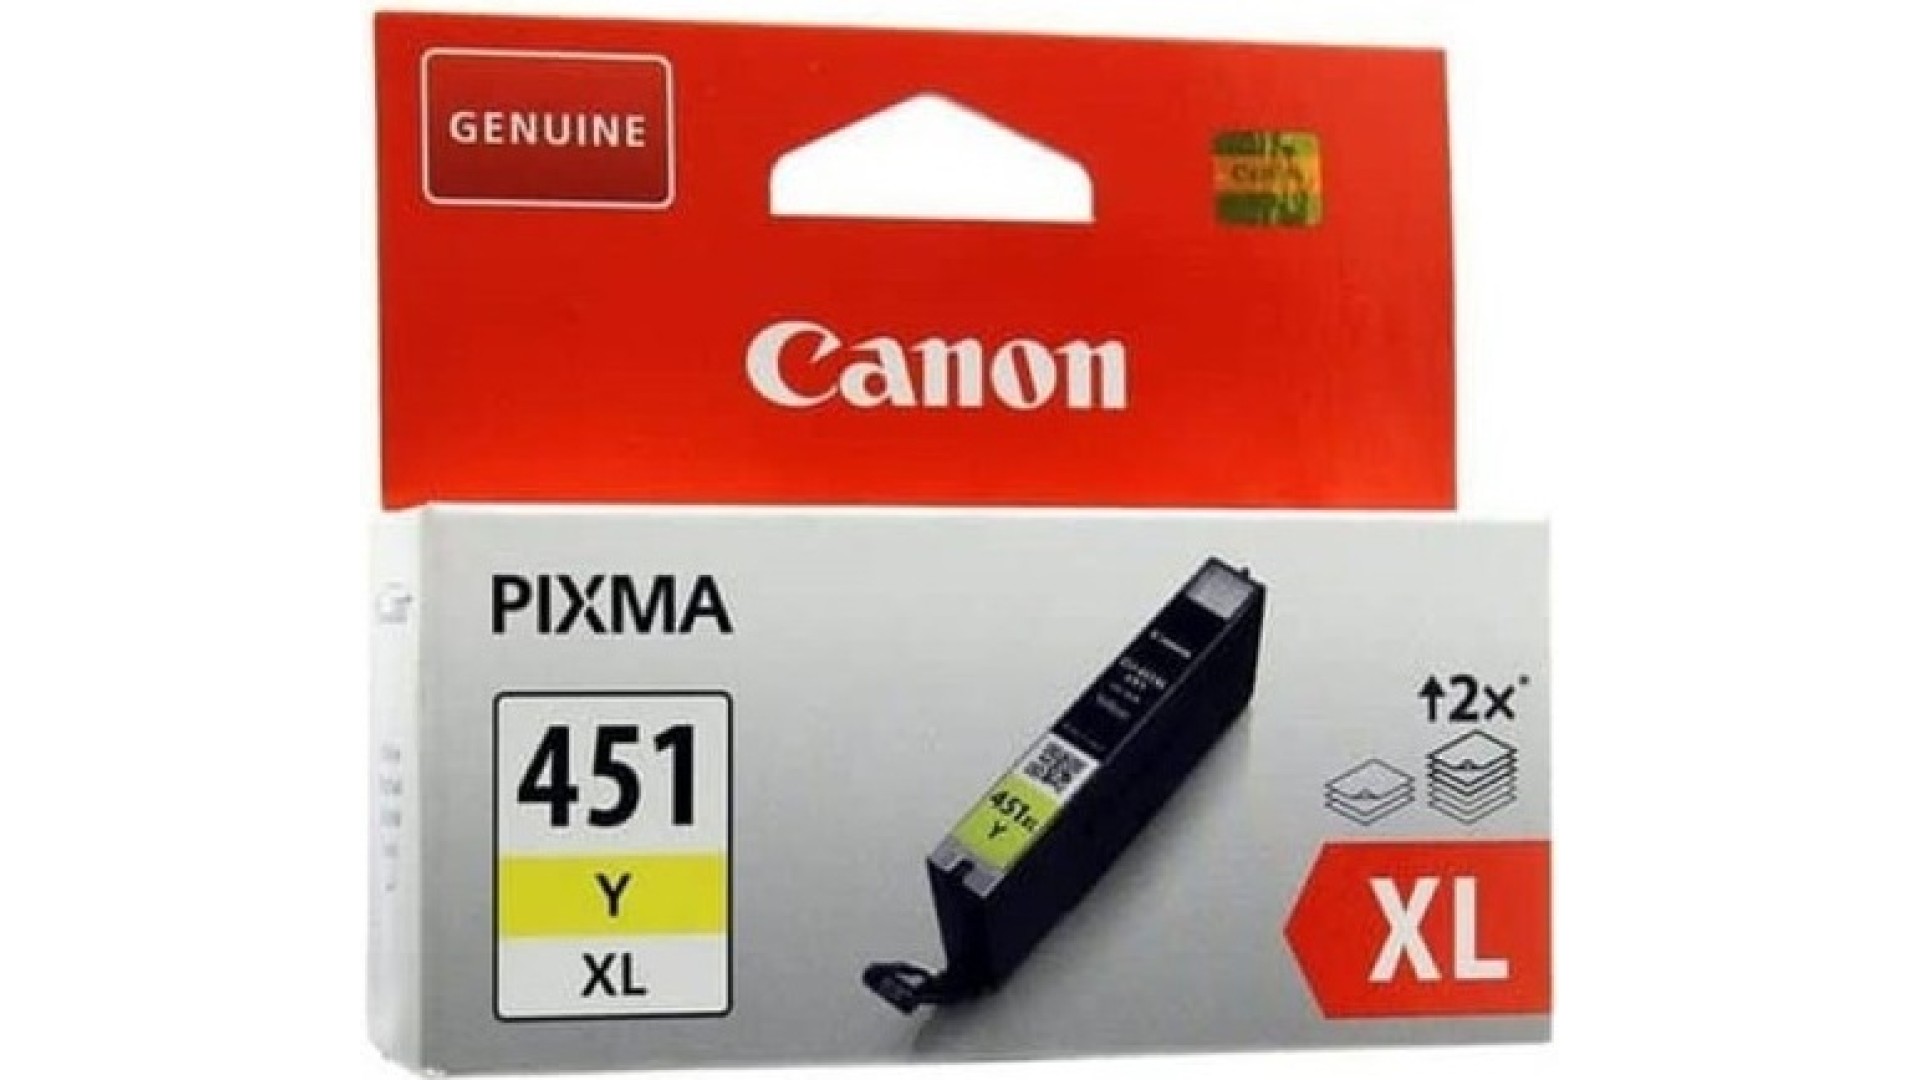 კარტრიჯი Canon  CLI-451 XL Yellow for PIXMA IP7240, iP8740, iX6840, MG5440, MG5540, MG5640, MG6340, MG6440, MG6640, MG7140, MG7540, MX924